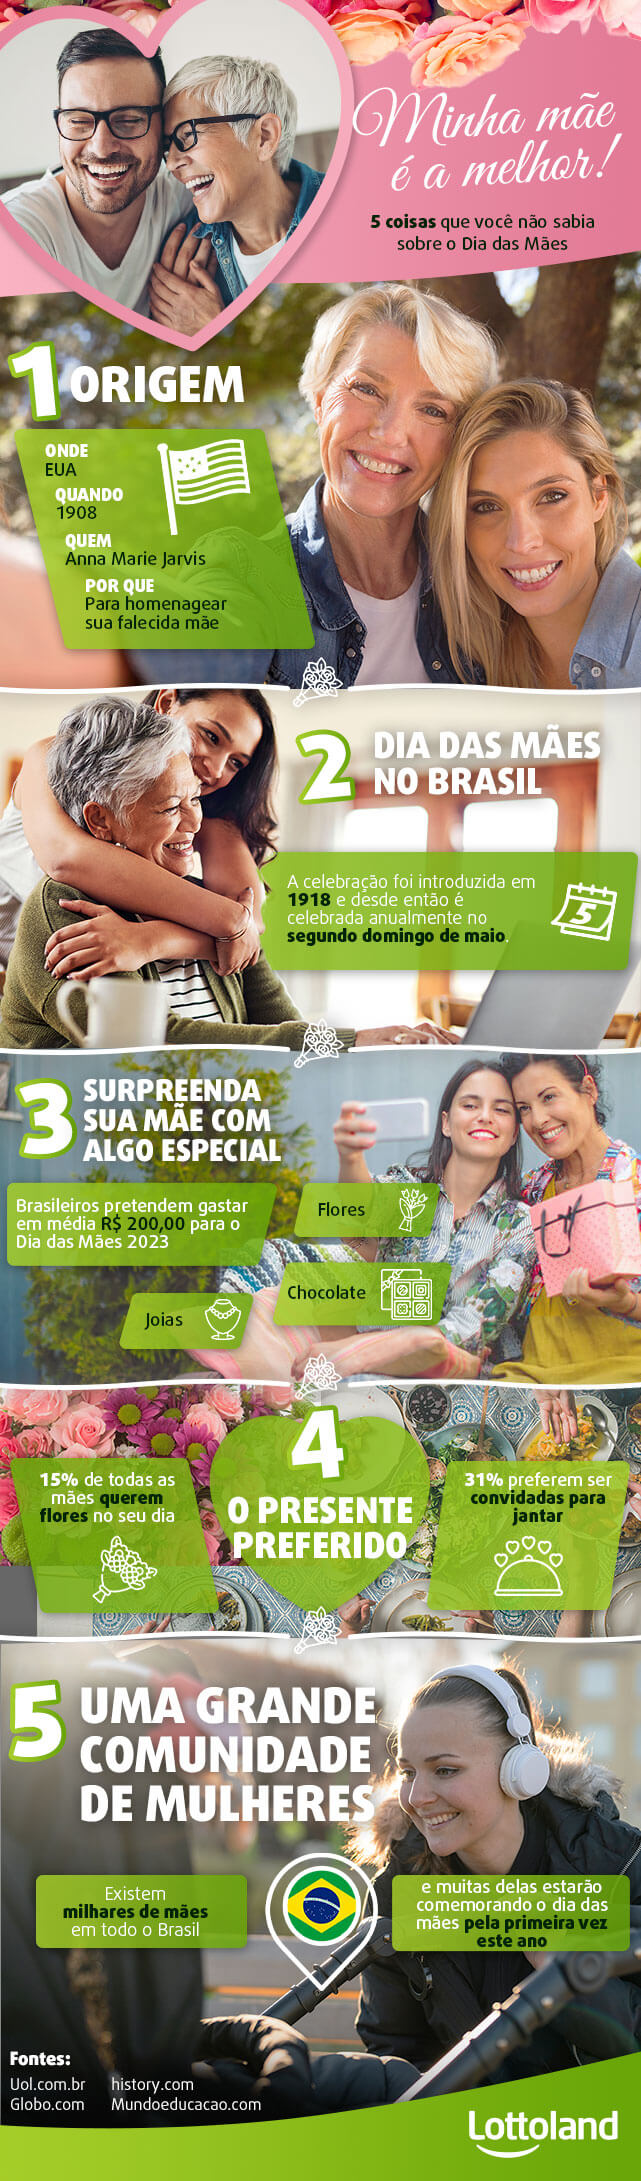 Infográfico com informações sobre o Dia das Mães no Brasil e no mundo: datas, presentes preferidos, estatísticas